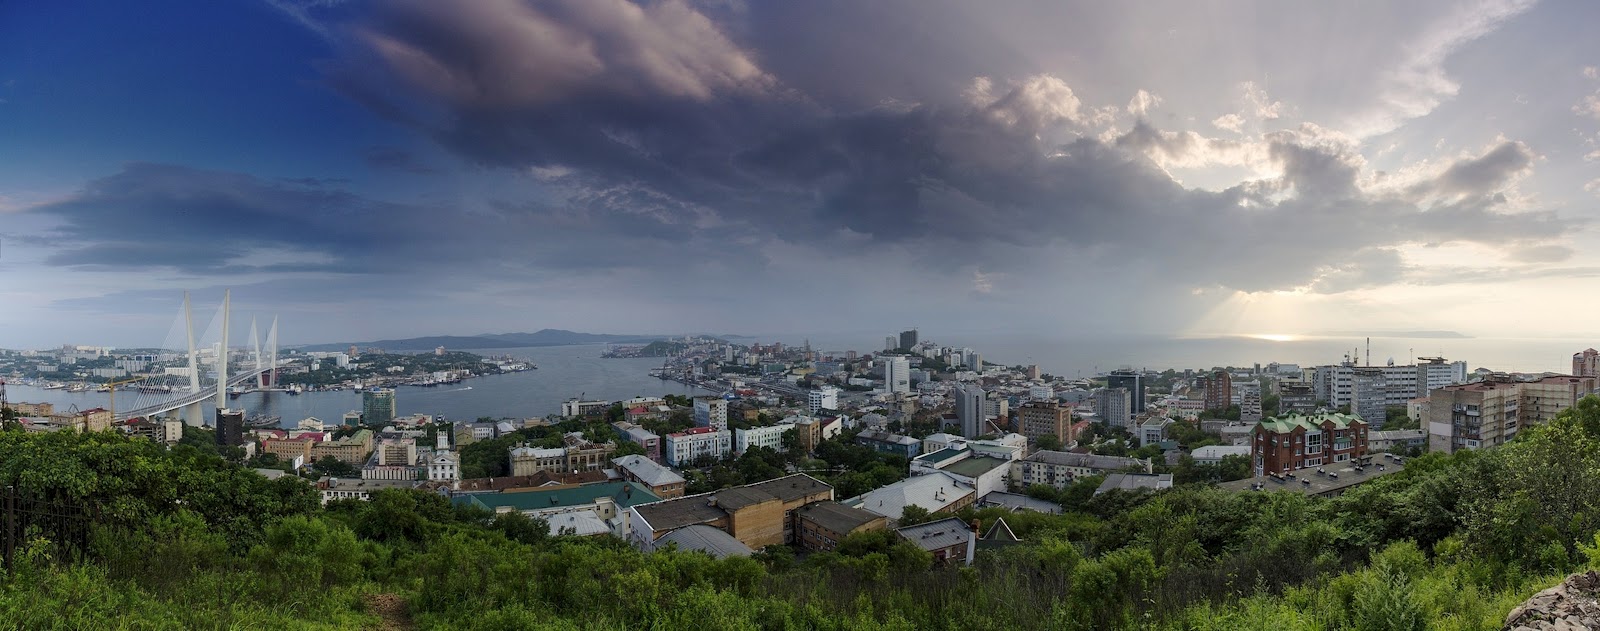 Владивосток полдень против. Владивосток панорама. Владивосток панорама города. Панорама 360 Владивосток. Владивосток мост панорама.